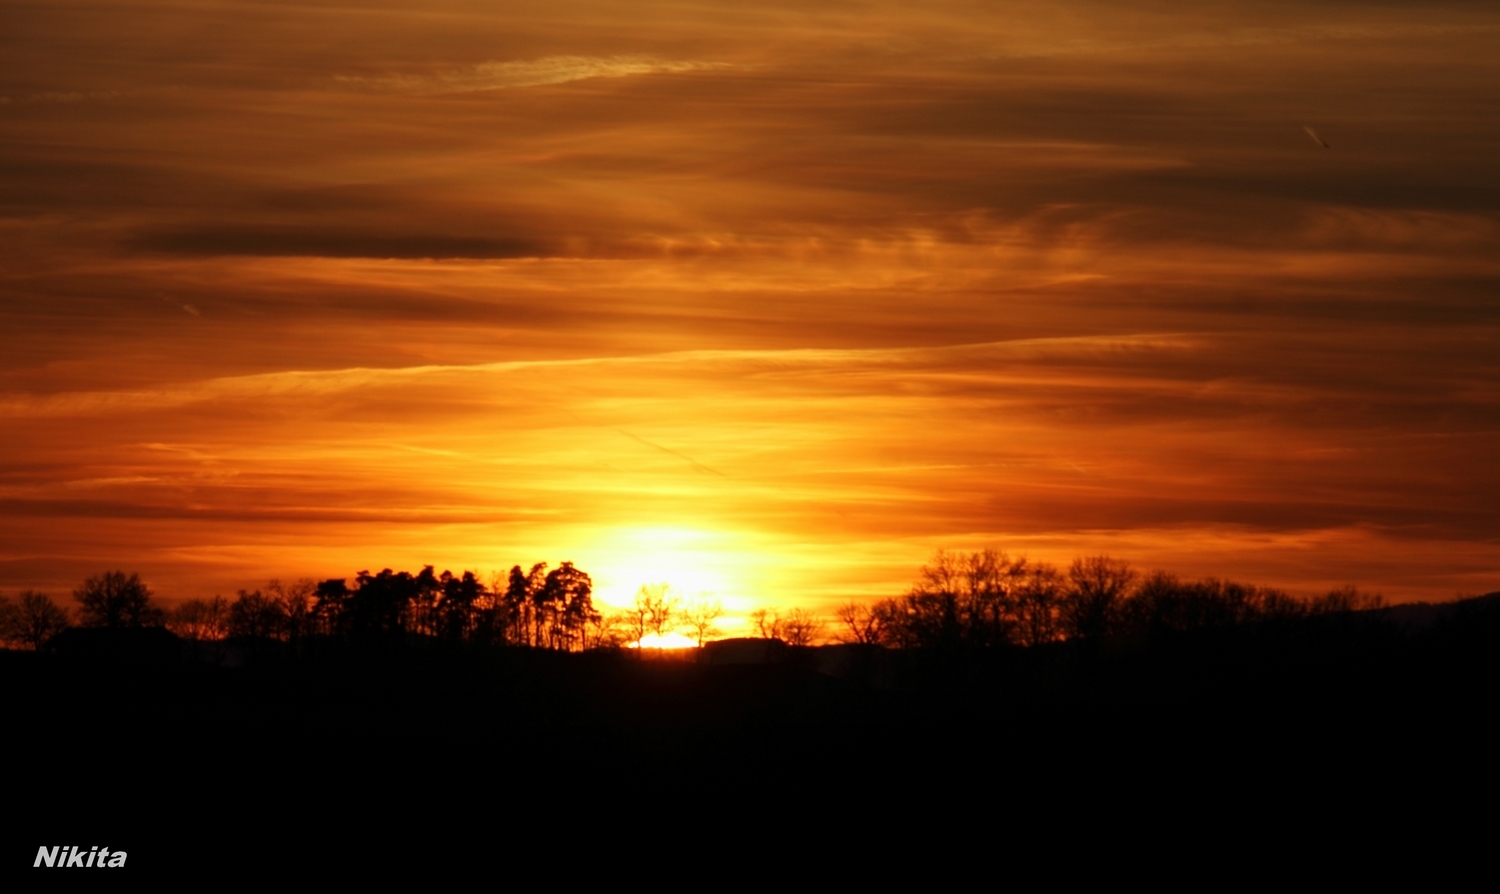 Tutoriel : Faire une photo d'un coucher de soleil. - Technique photographique - Forumdephotos.com